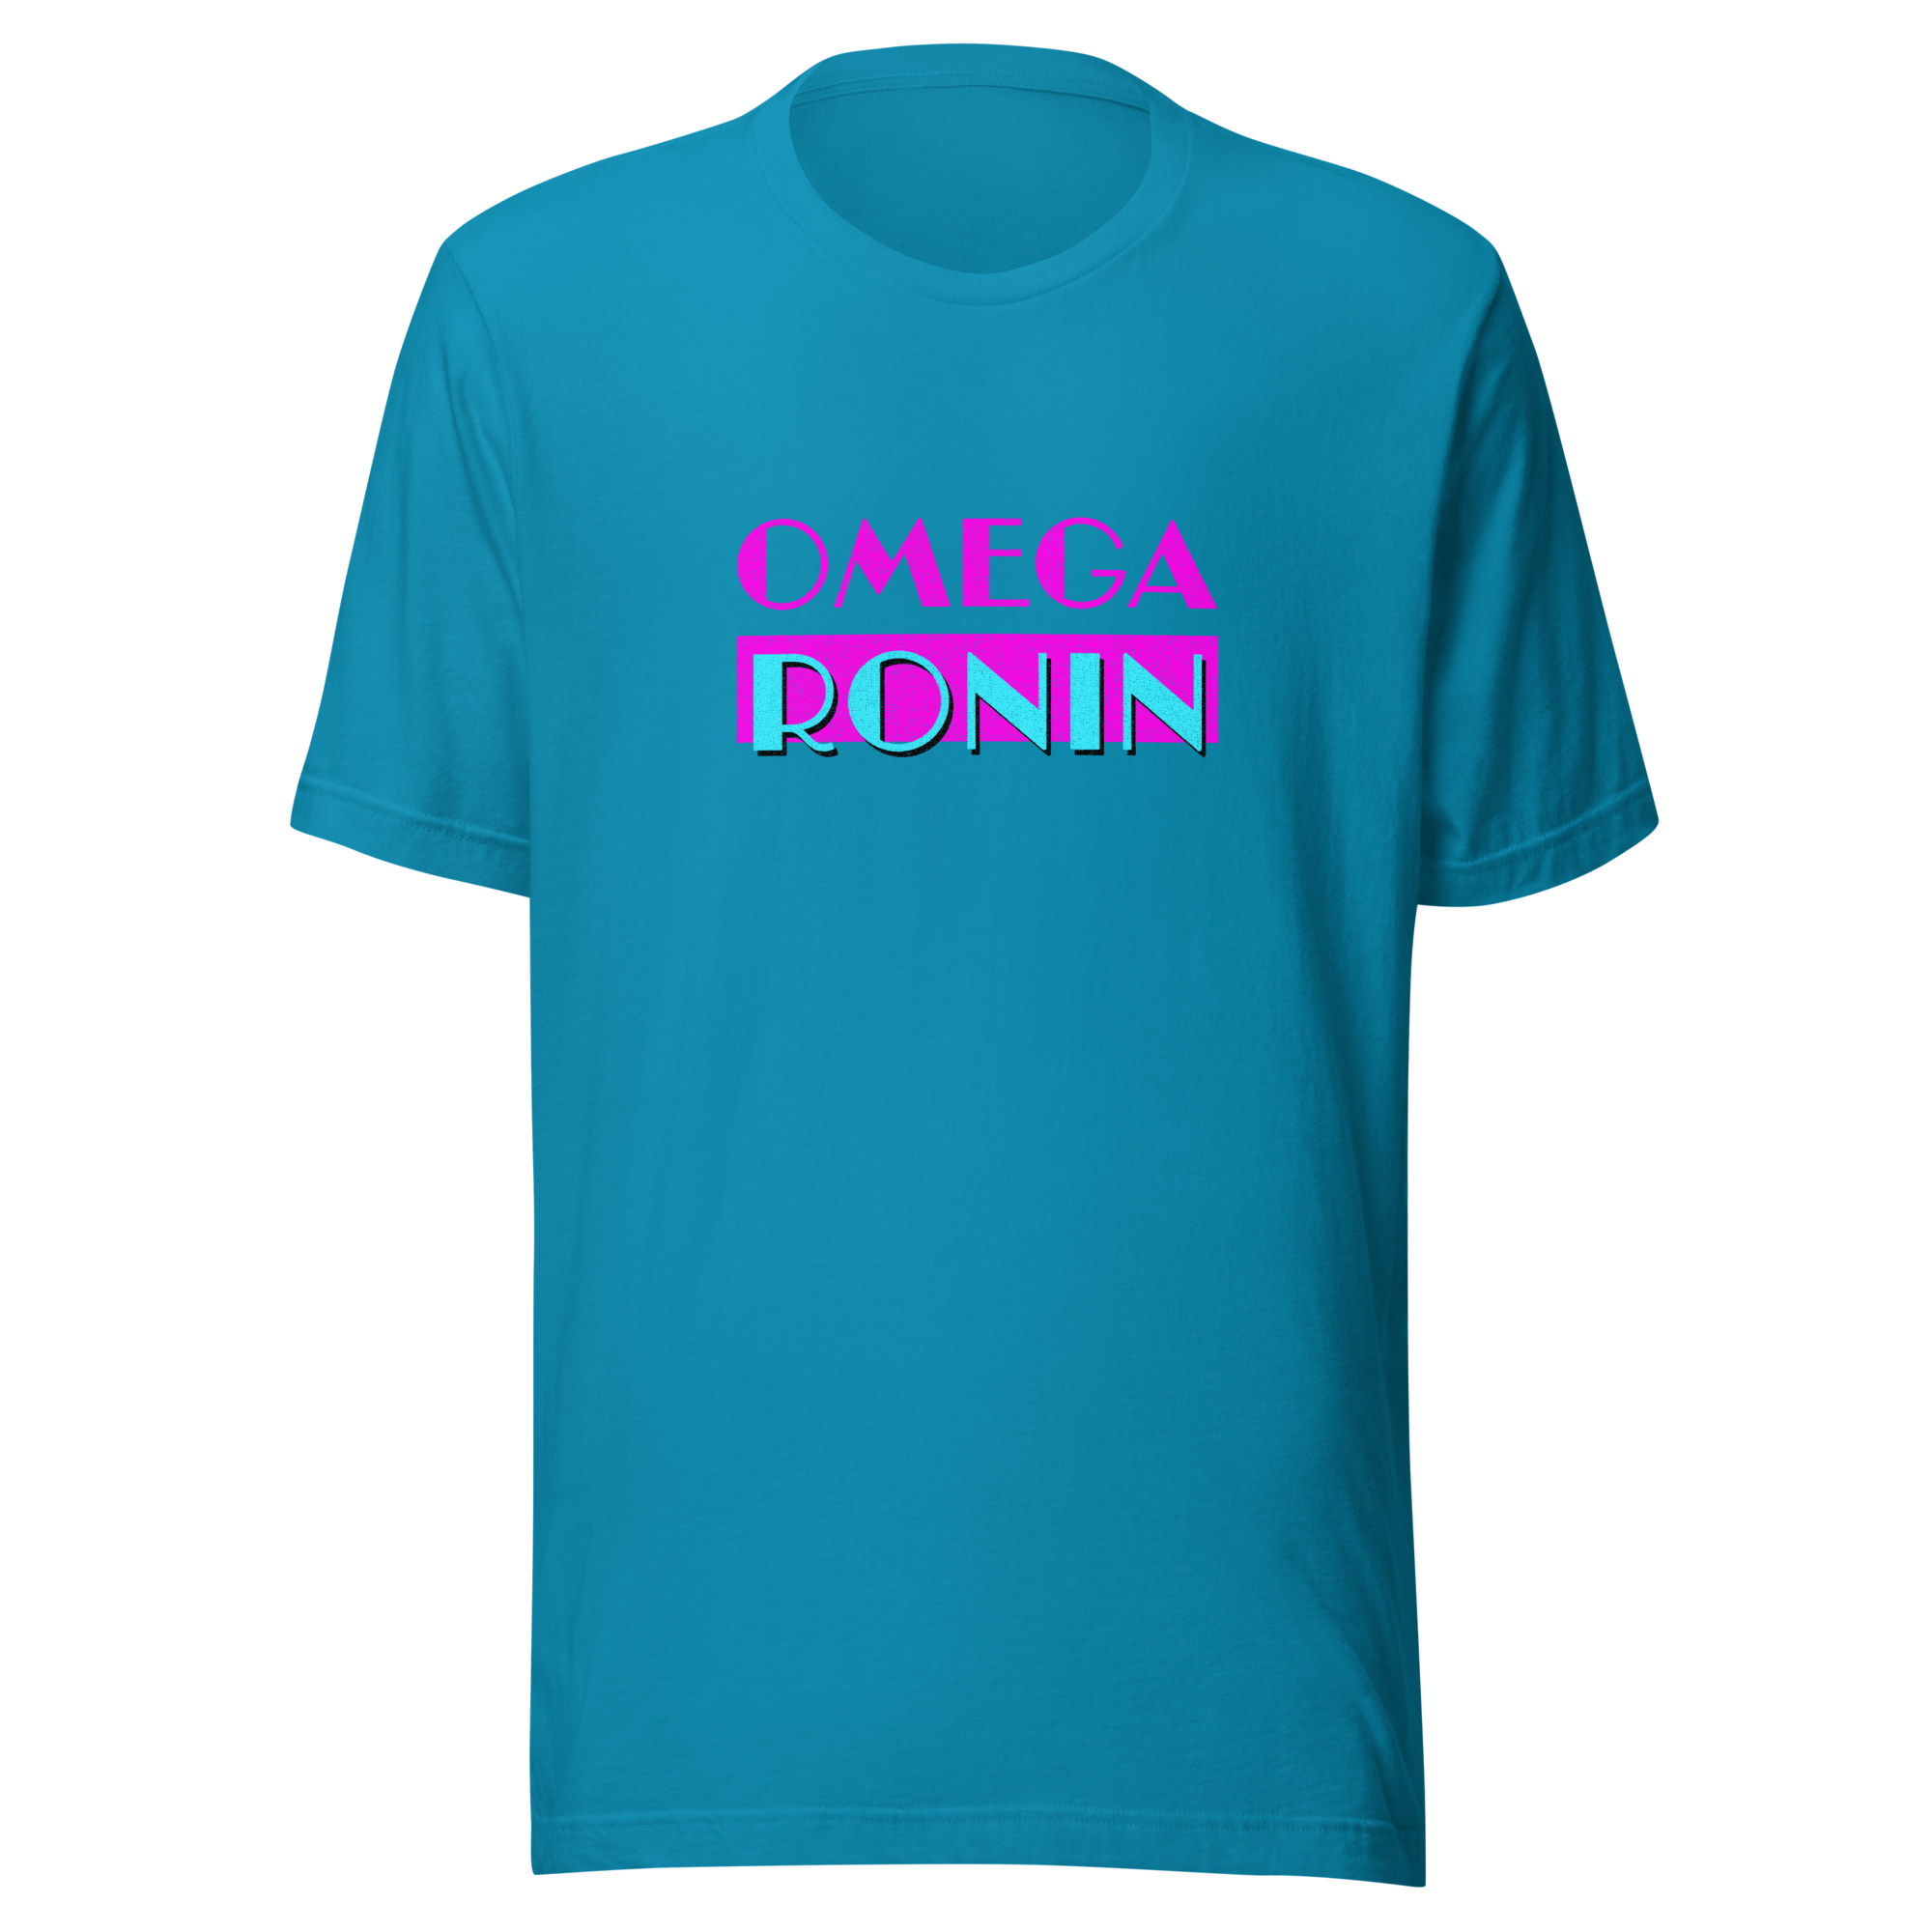 Omega Ronin Retro 1984 Miami T-Shirt *12 Colors*